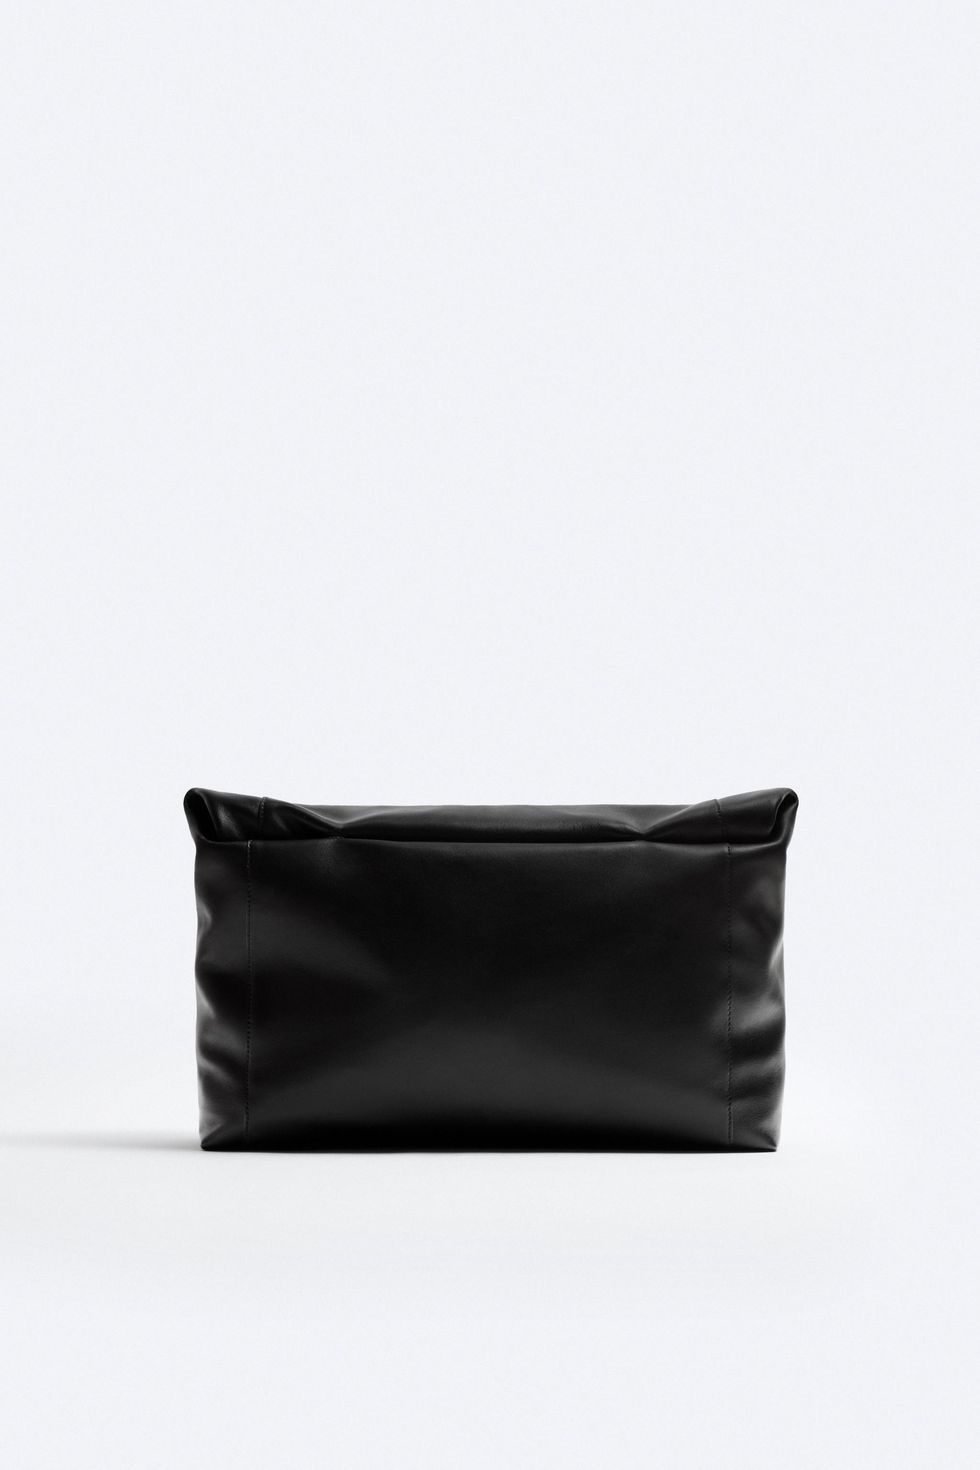 Zara XL Nappa Leather Soft Clutch